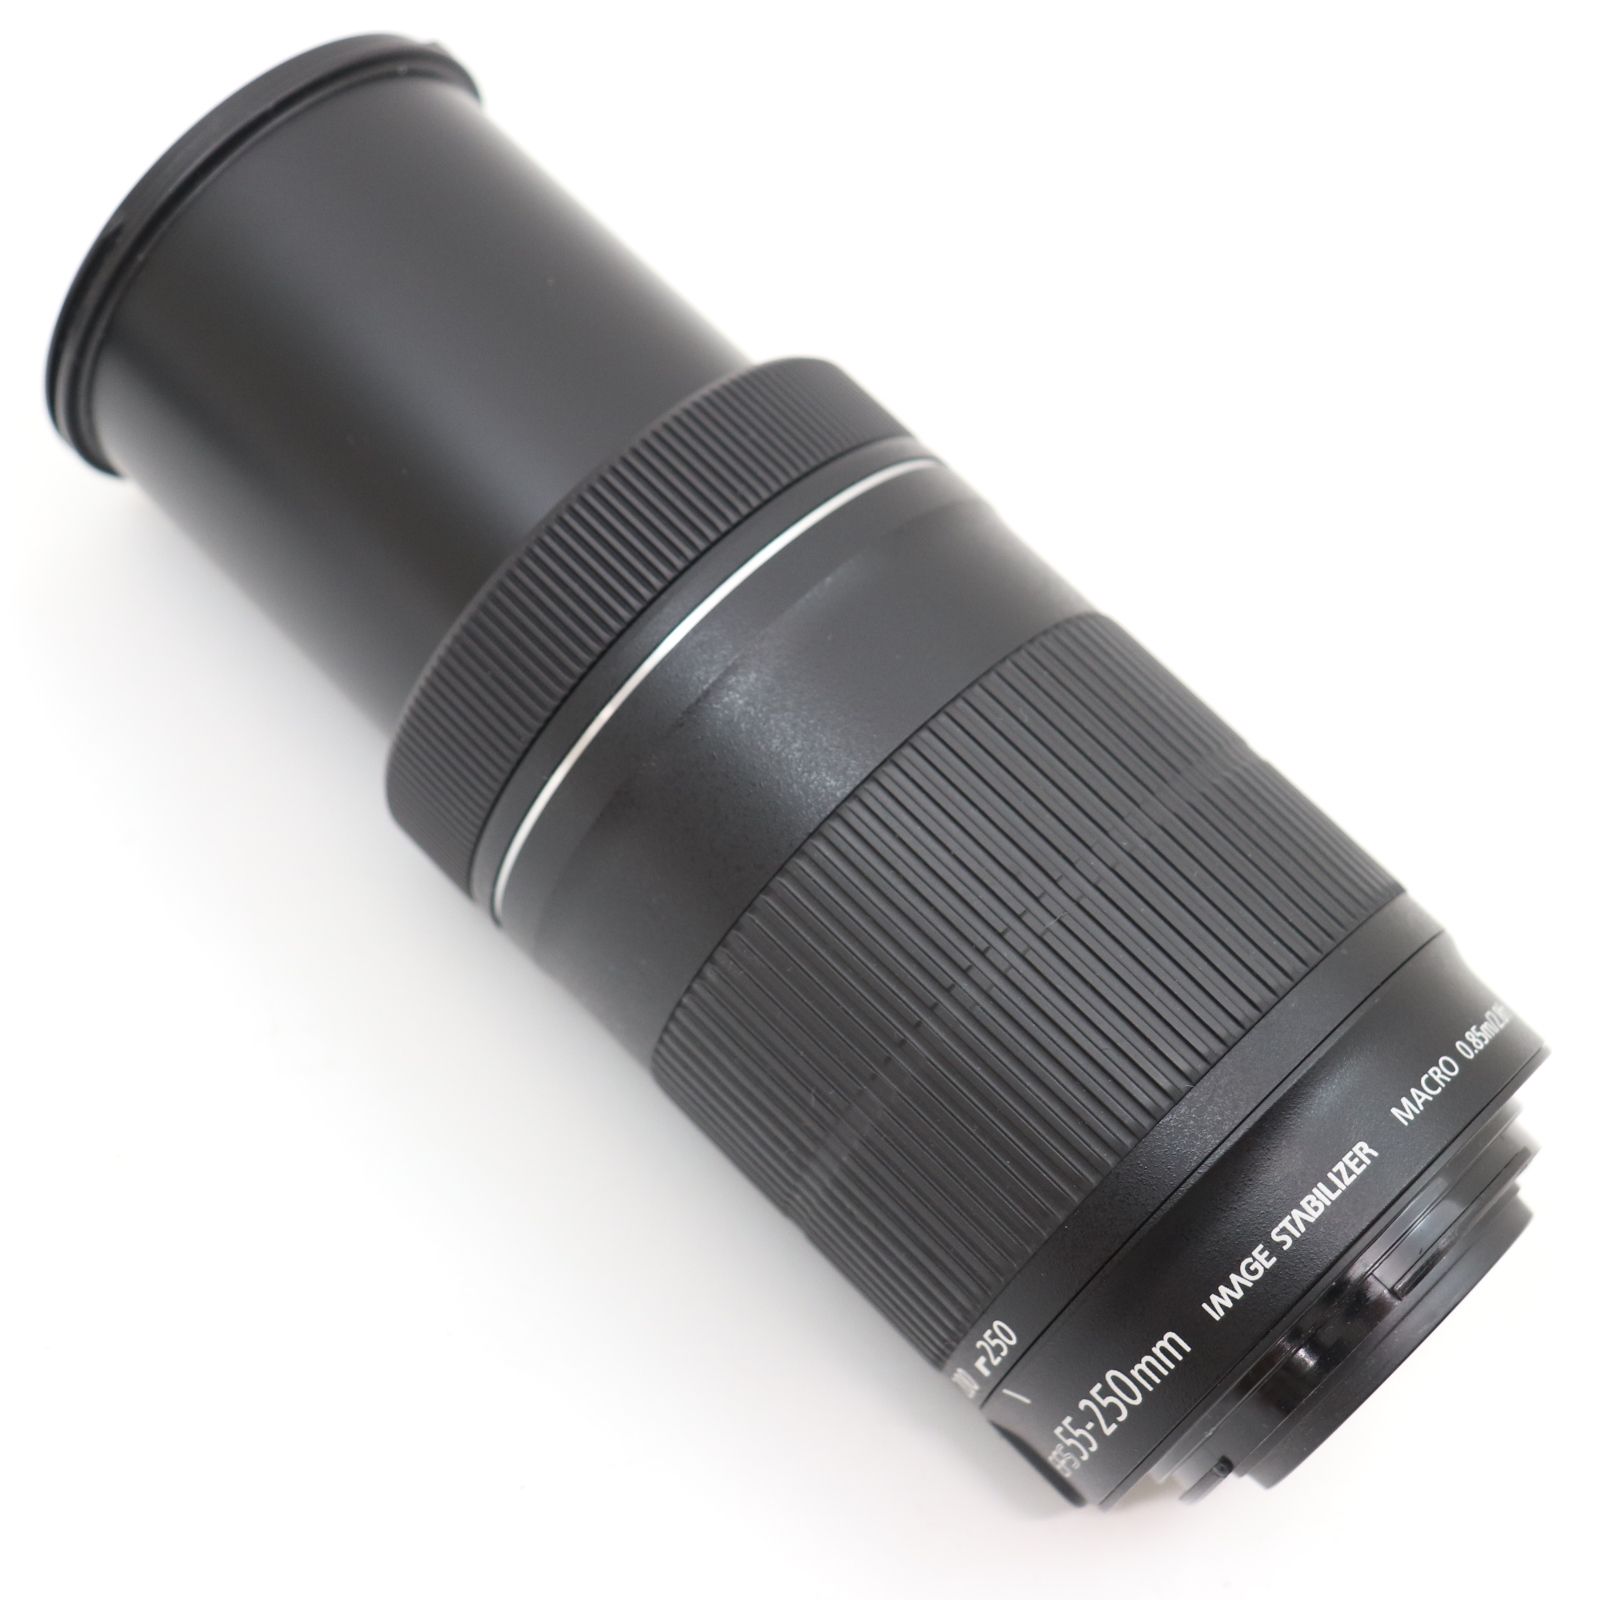 ITTVNYXBBT4I キャノン ZOOM LENS EF-S 55-250mm 1:4-5.6 IS STM MACRO 0.85M/2.8ft  カメラ レンズ